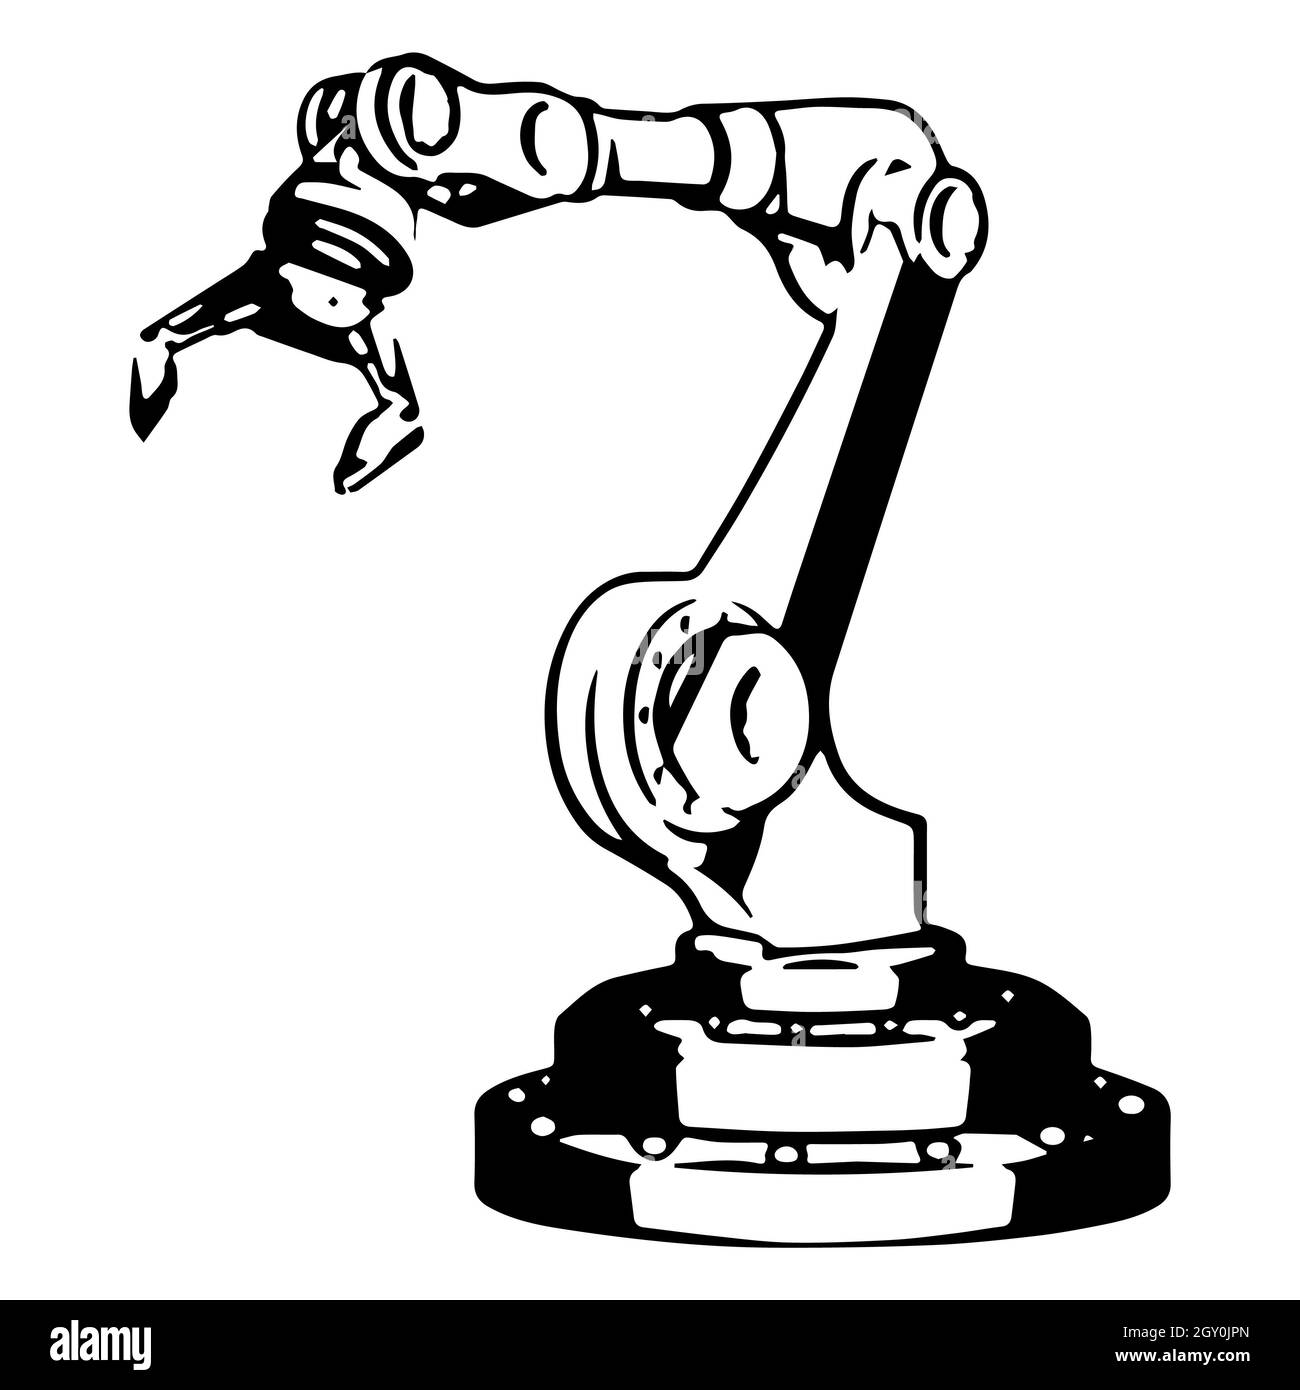 Mecanismo robótico Imágenes de stock en blanco y negro - Alamy